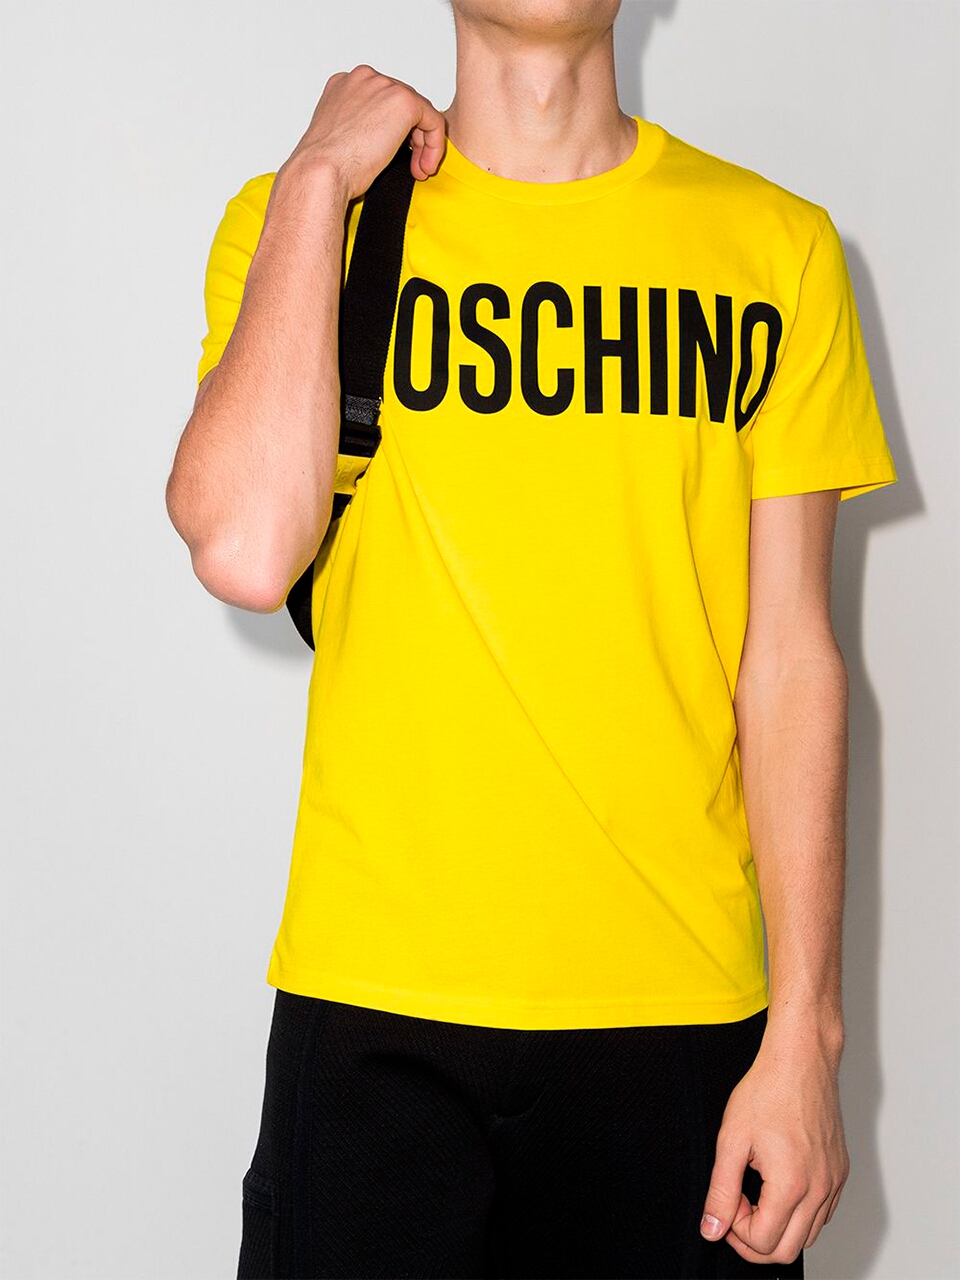 Imagem de: Camiseta Moschino Amarela com Logo Preto